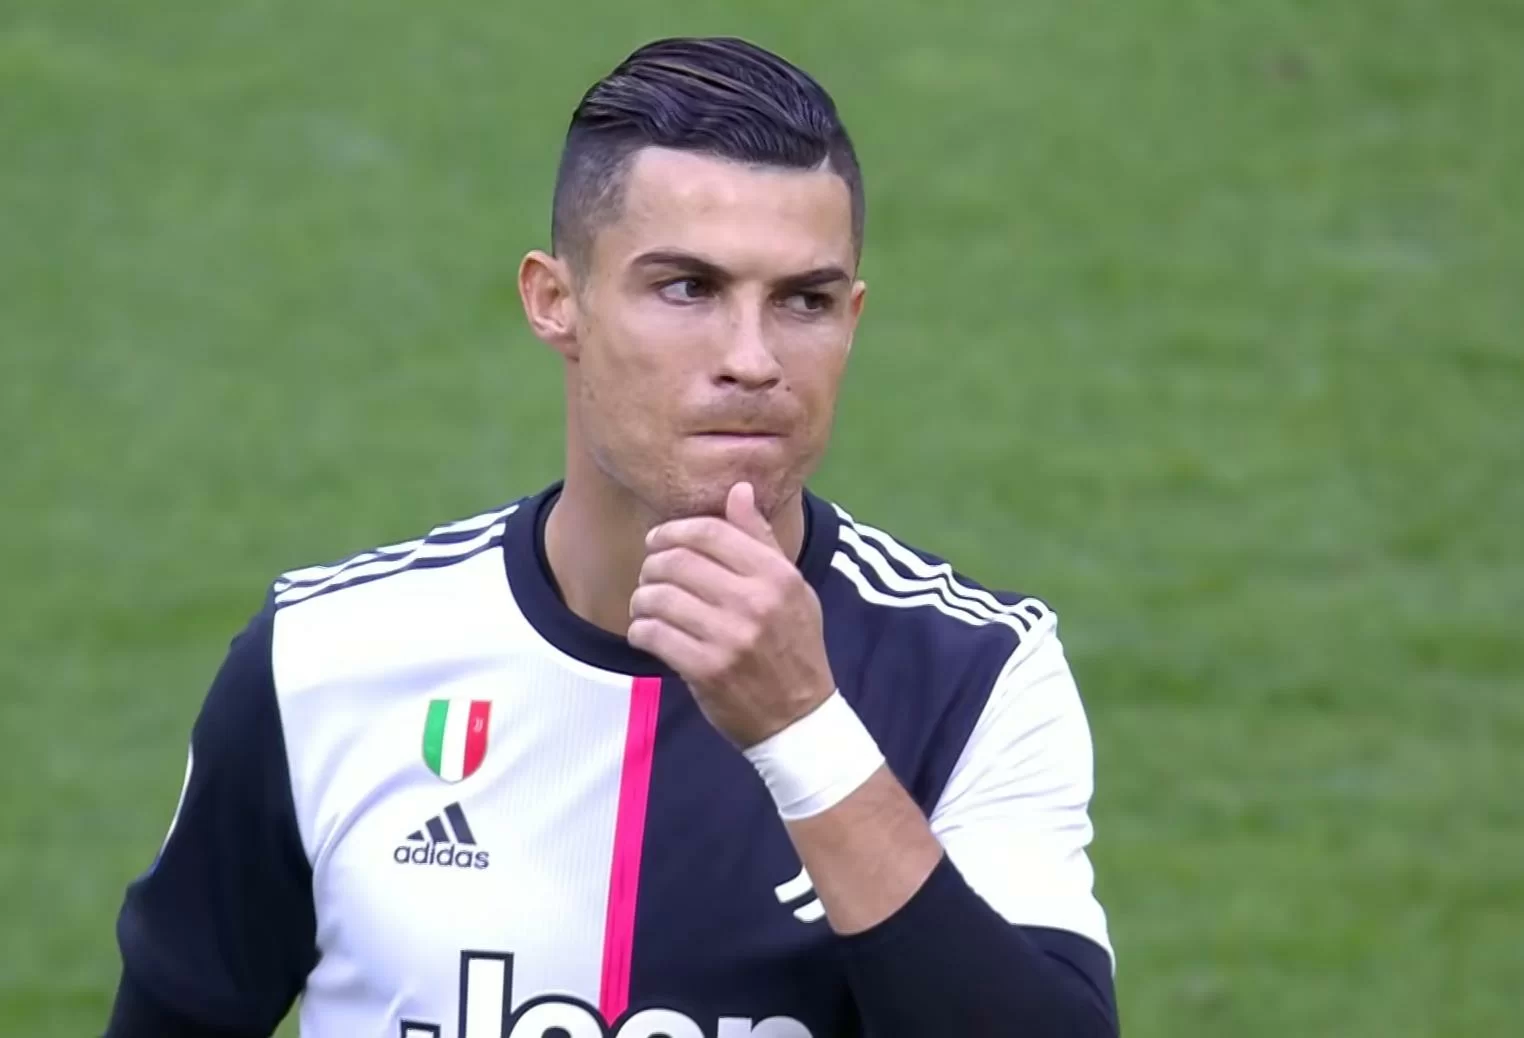 Cristiano Ronaldo colpito da sinusite, salta l’Udinese. Il comunicato fa discutere sui social: il motivo